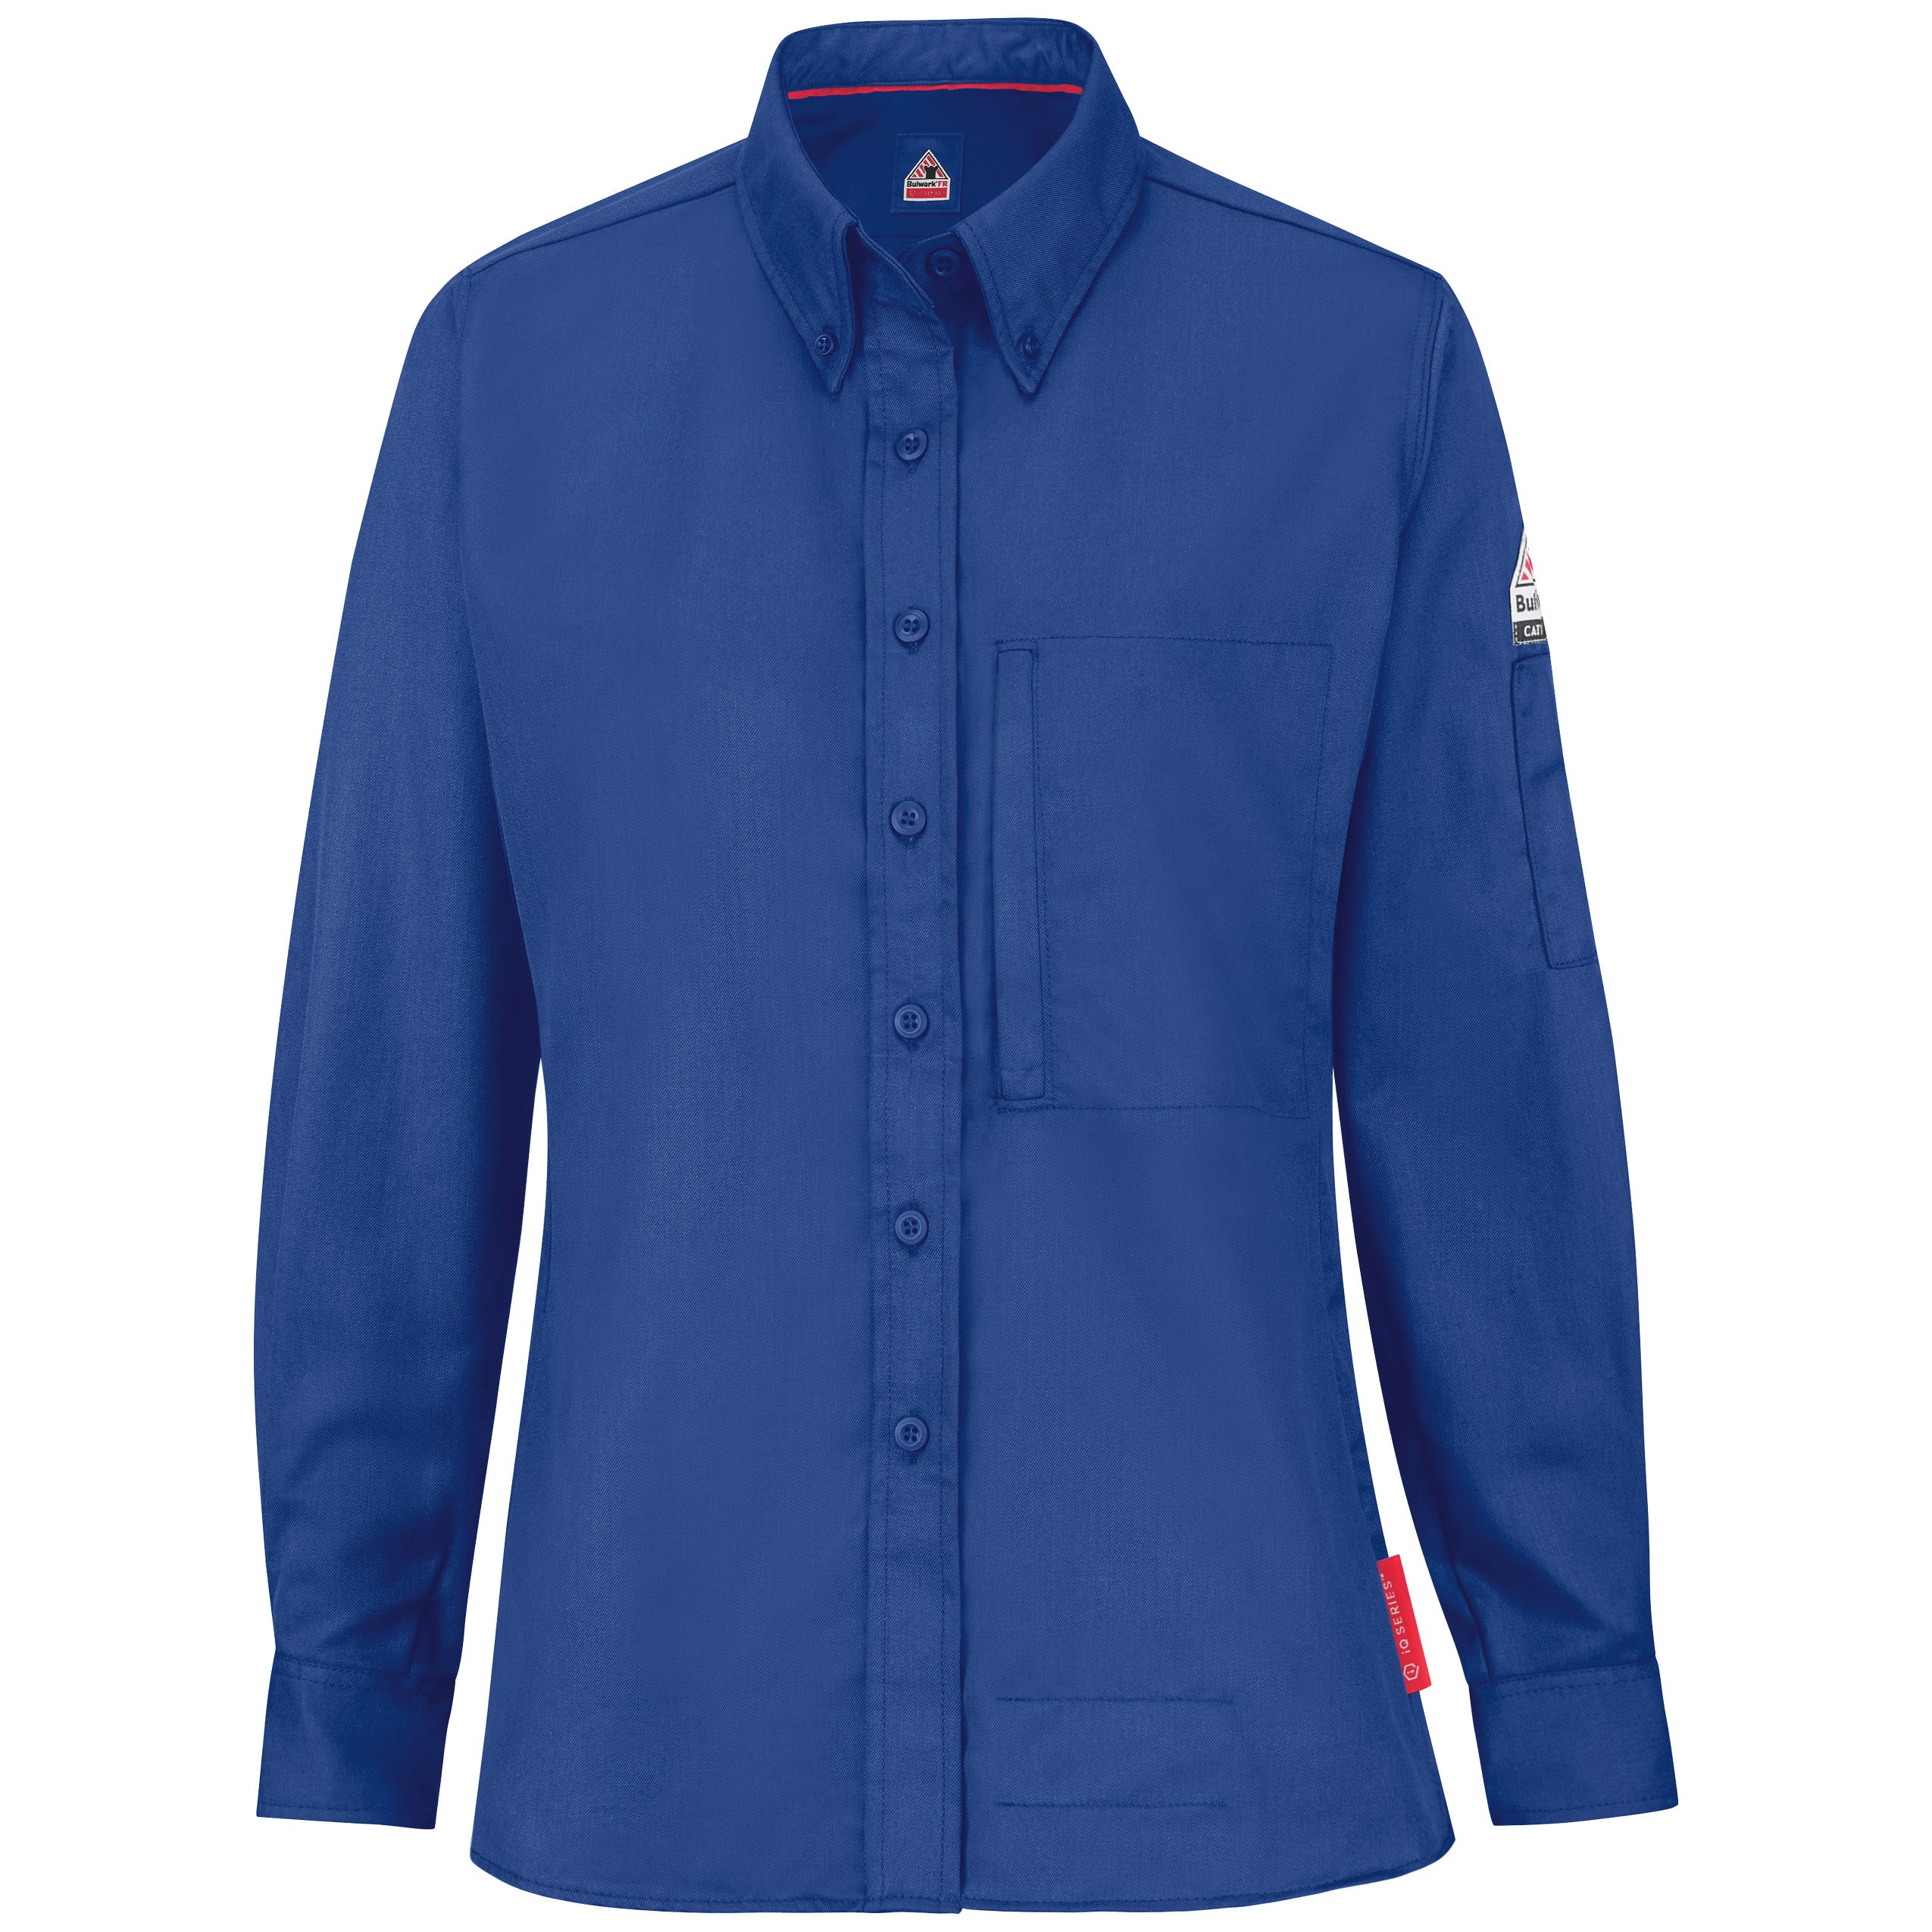 iQ Series Women’s Midweight Comfort Woven Shirt QS25 - Royal Blue-eSafety Supplies, Inc